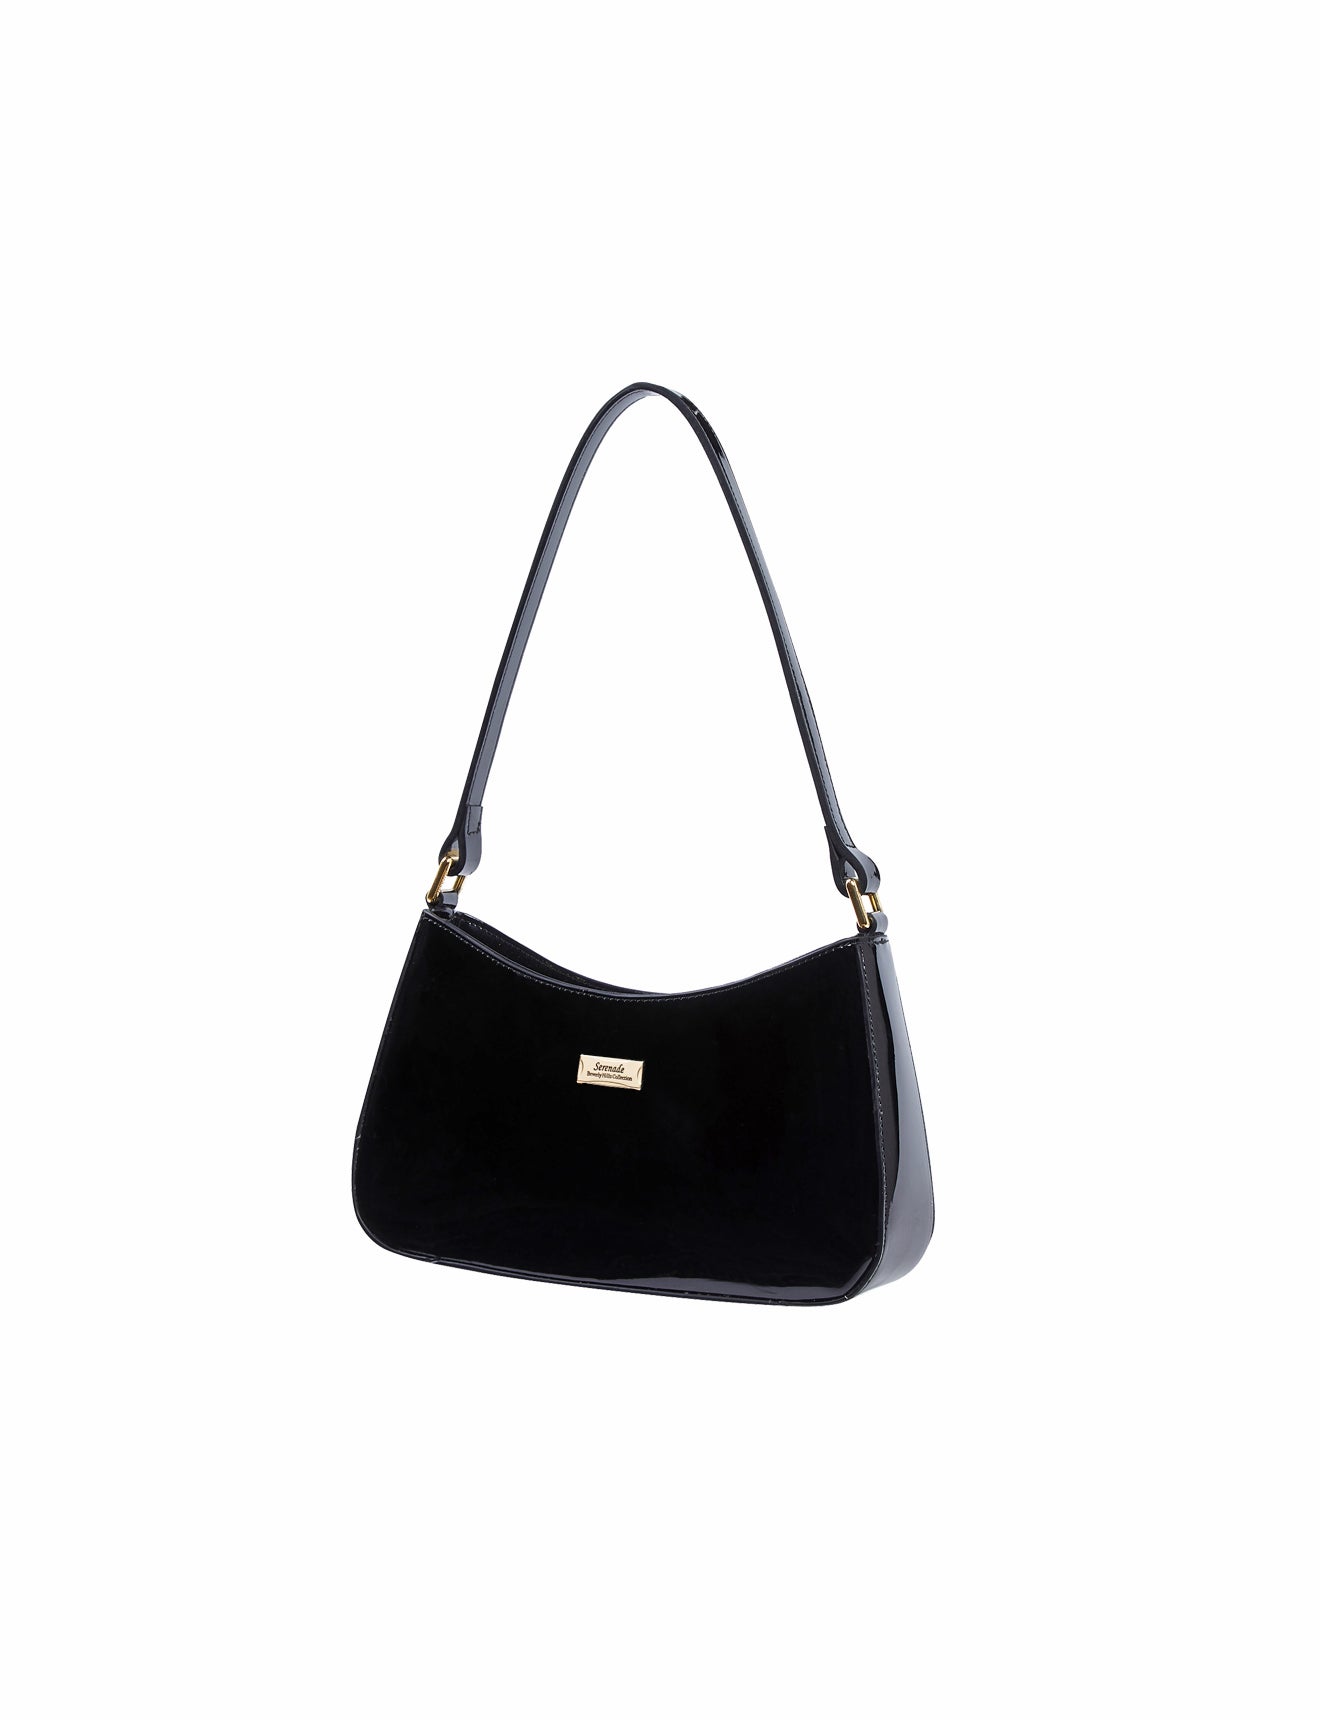 Serenade - Allura SV1-0821 Patent Leather Handbag - Black-2